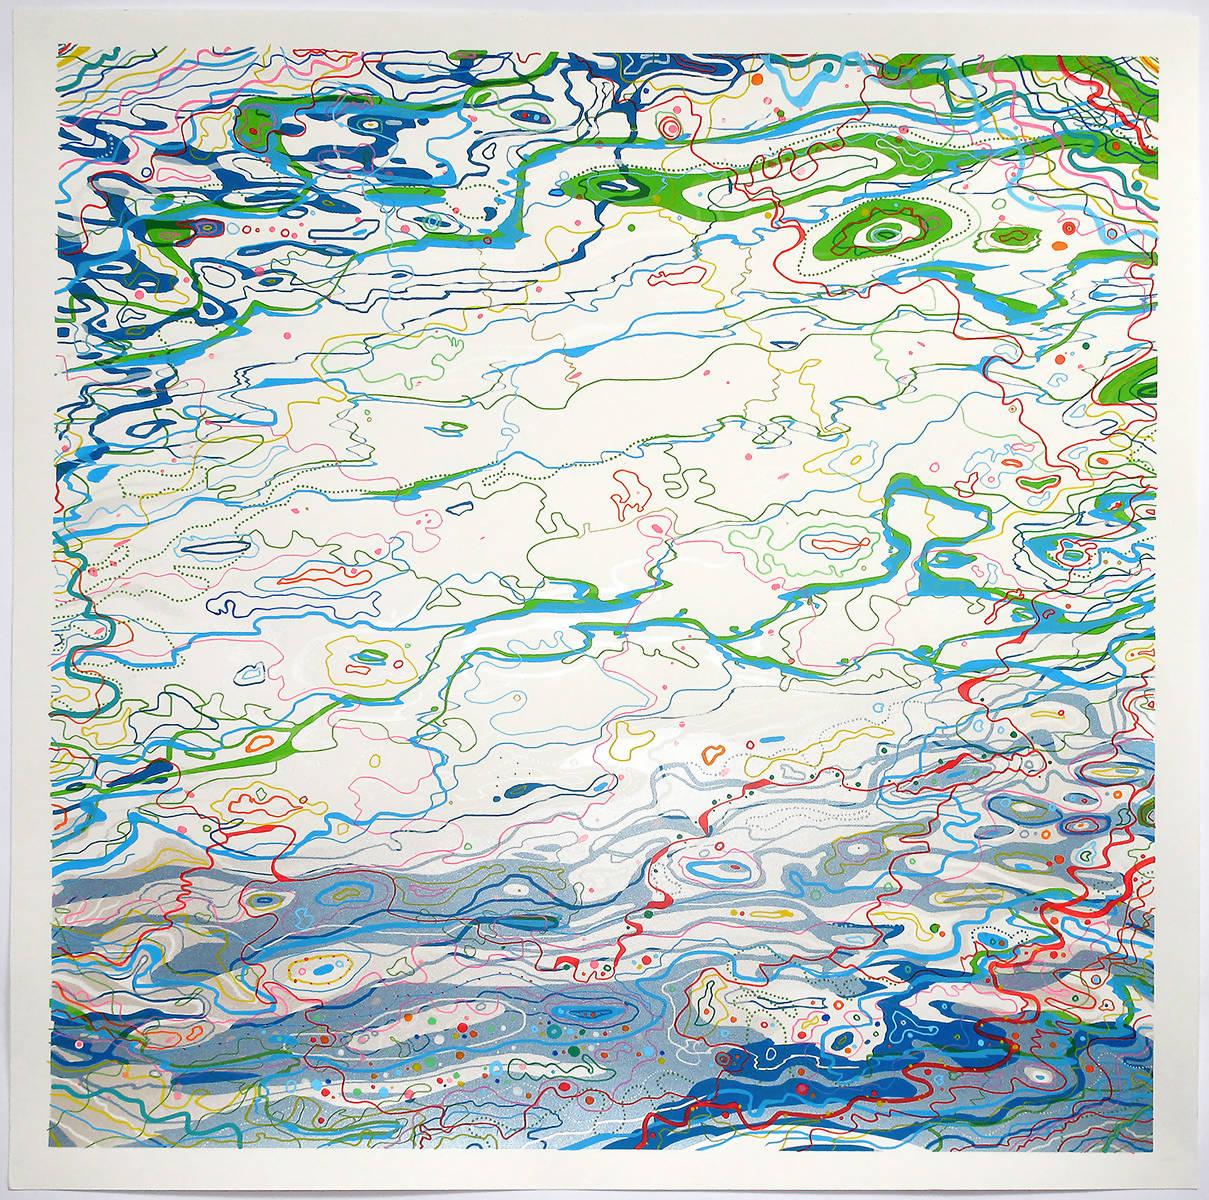 Print Chris Keegan - Ripples of Color, impression d'art, abstrait, eau, art en ligne, bleu vert, rouge, blanc 